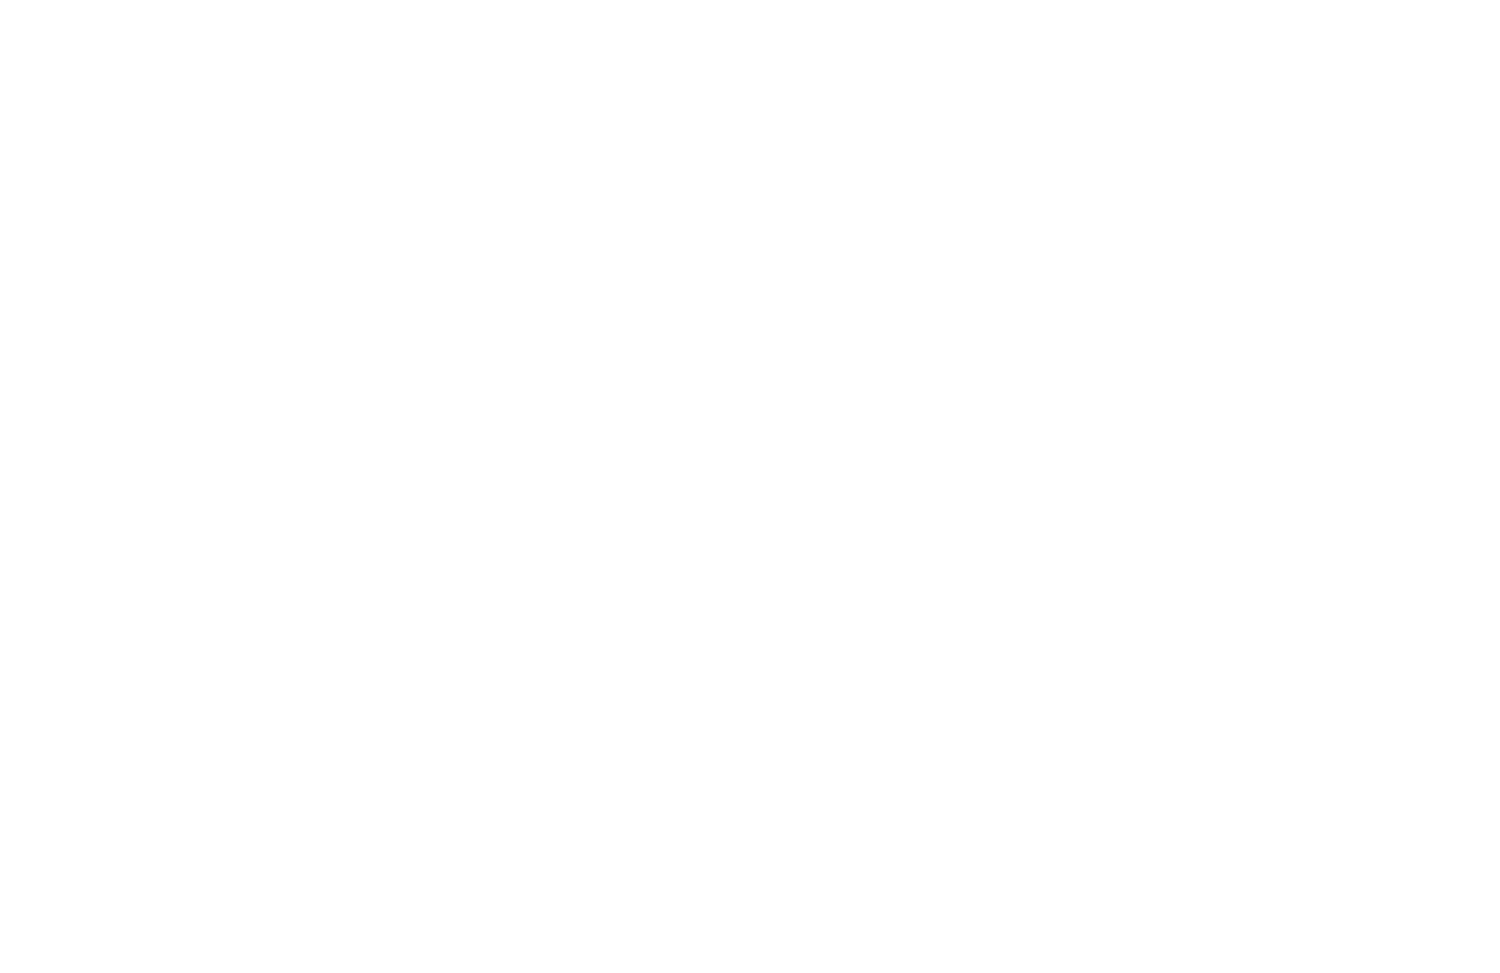 Mothercraft Midwifery